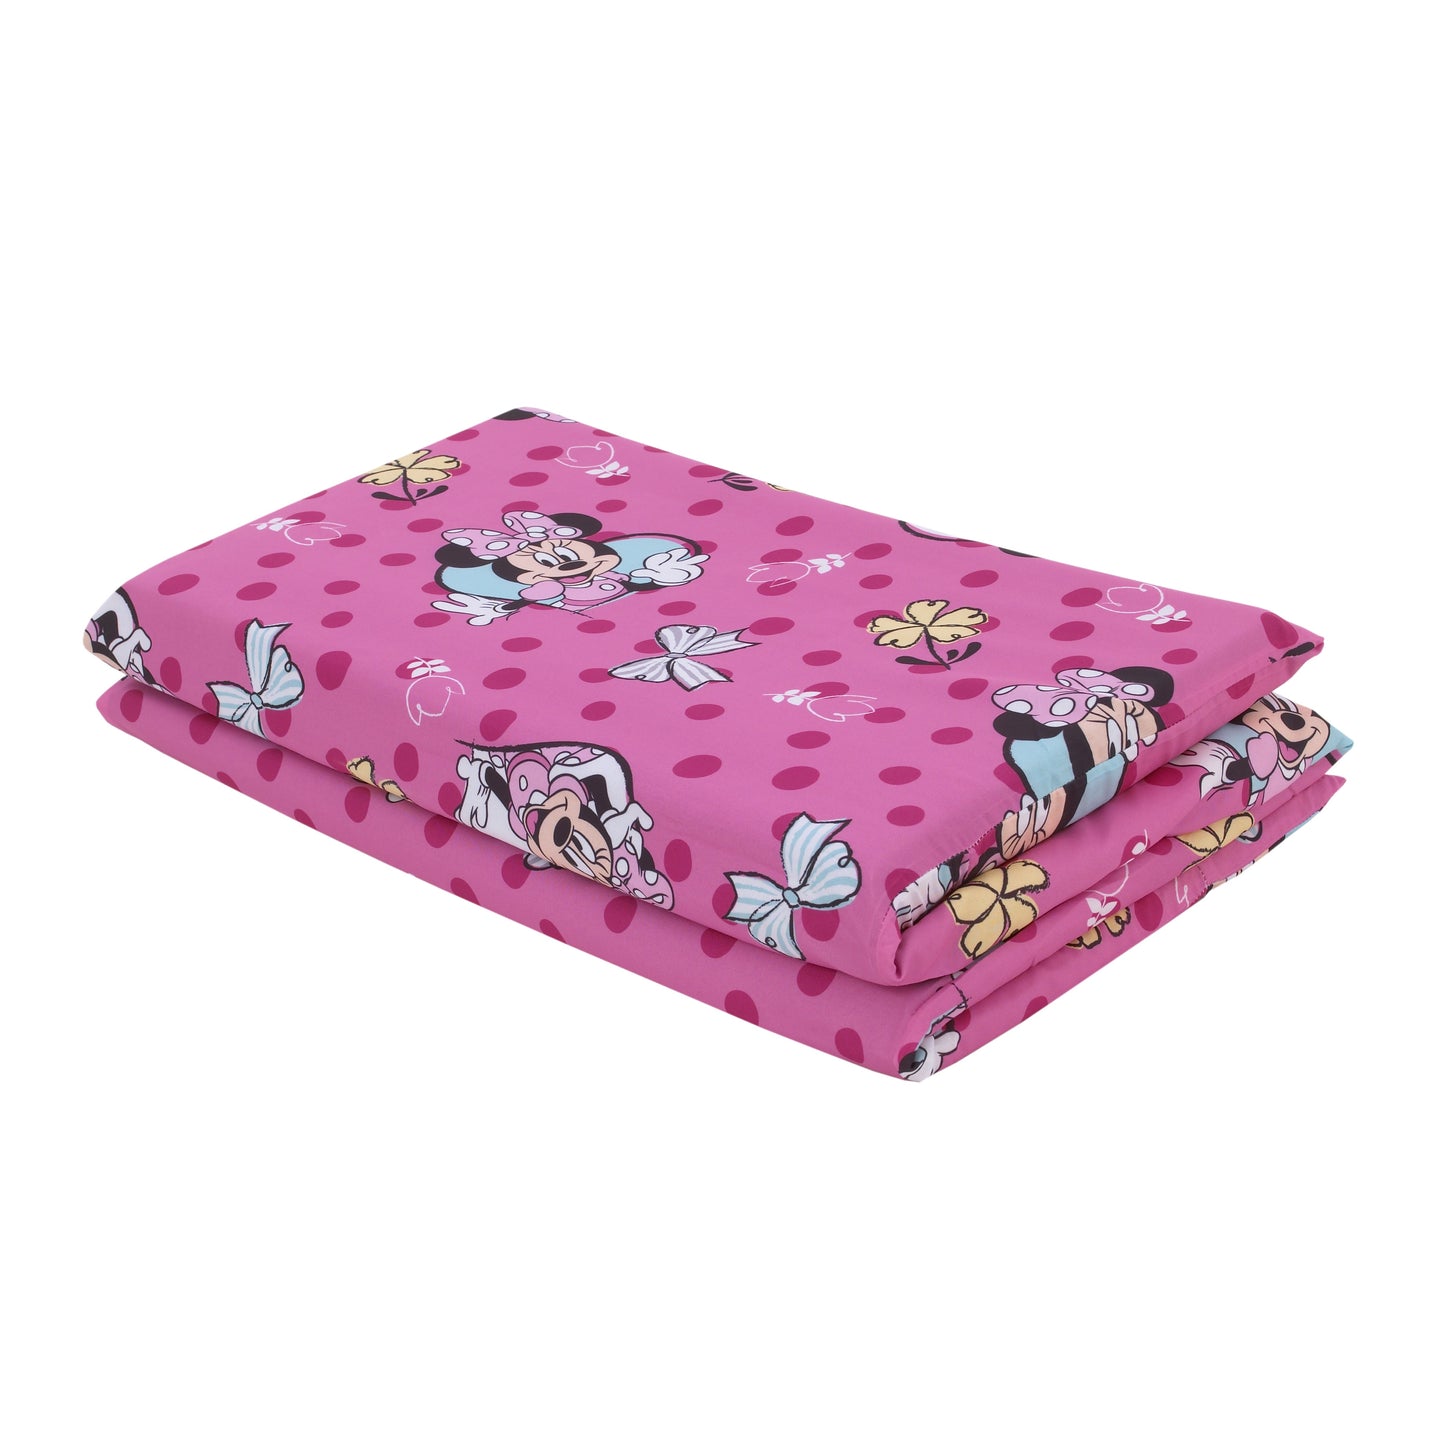 Disney Minnie Mouse Pink and Aqua Preschool Nap Pad Sheet